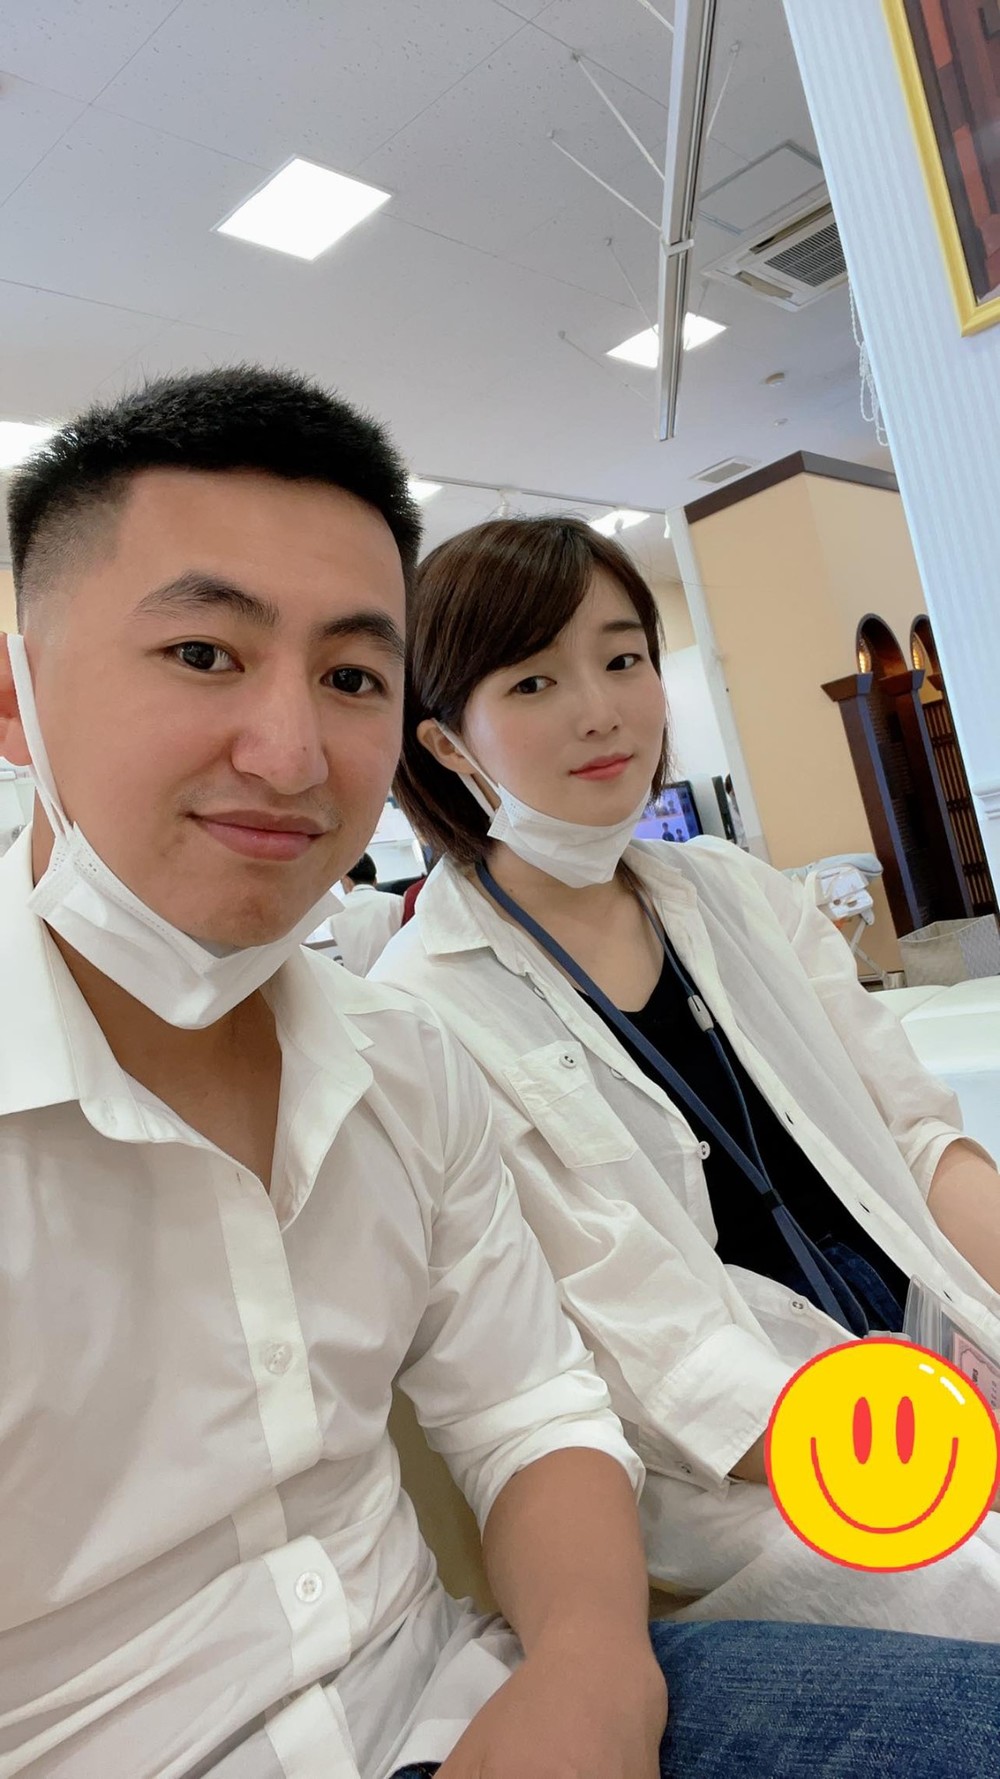  
Anh Toàn và cô vợ xinh đẹp người Nhật. (Ảnh: FB Phan Đình Toàn)